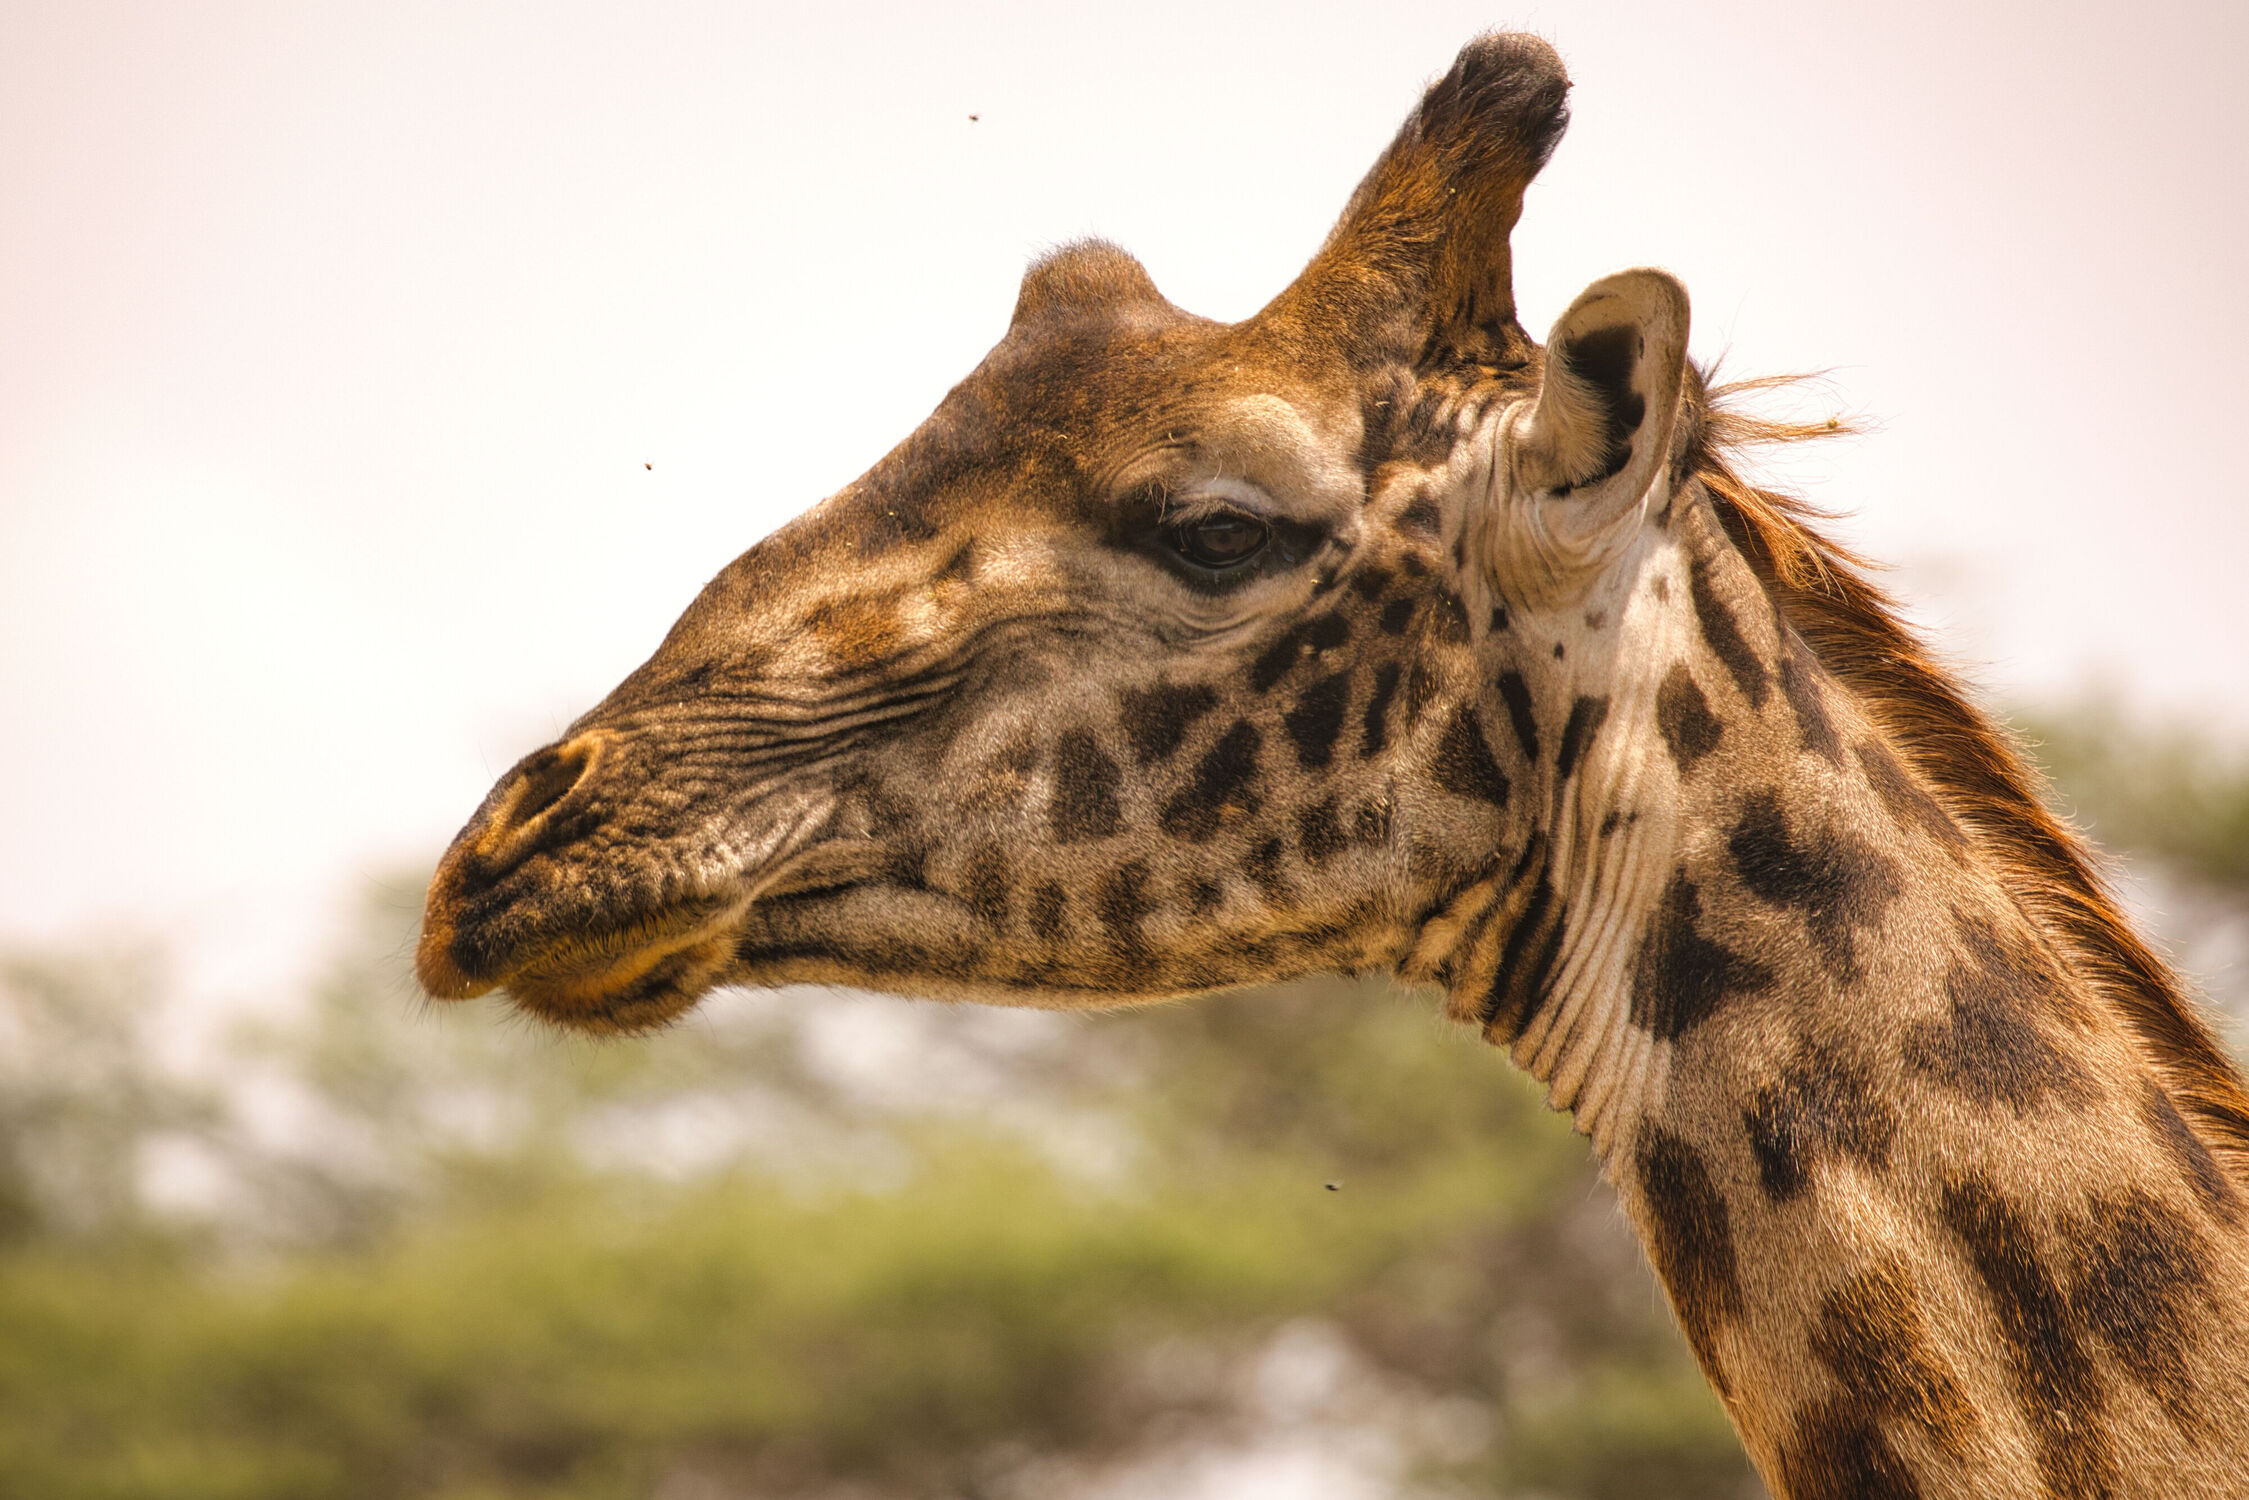 Bild mit Giraffen, Giraffe, Afrika, Portrait, safari, elegant, Serengeti, tanzania, Ndutu, Ngorogoro